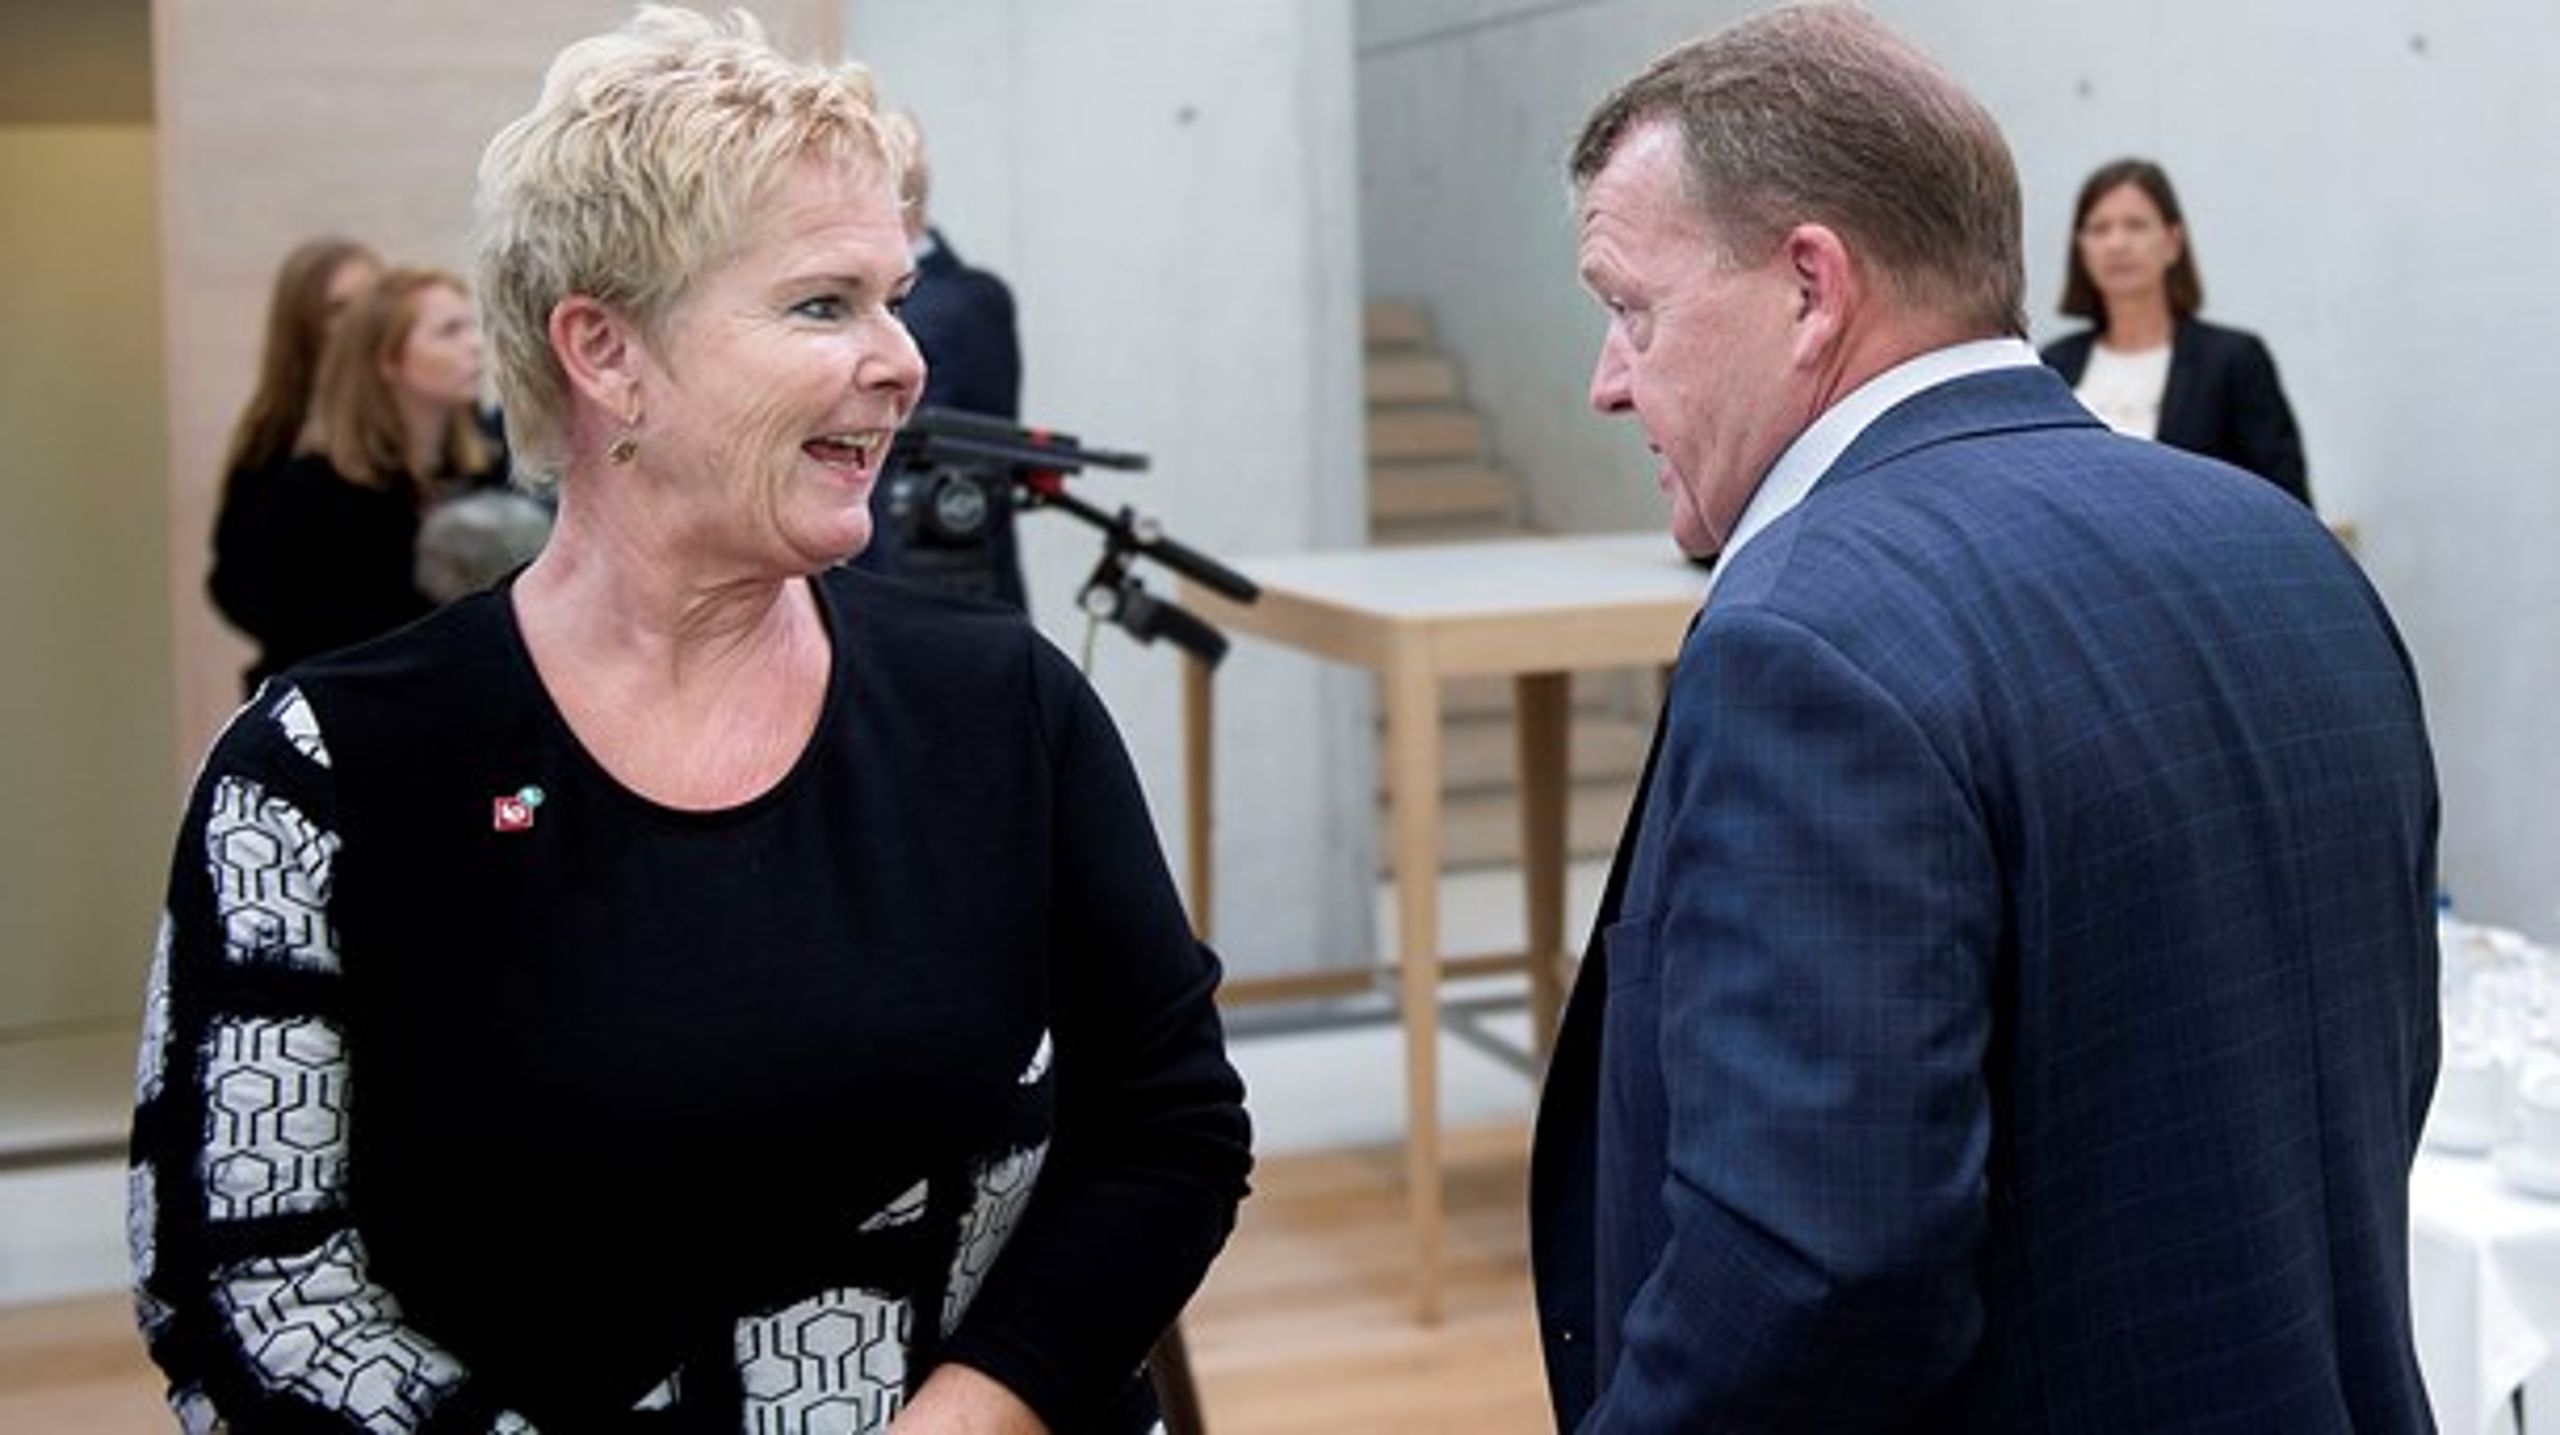 Lars Løkke Rasmussens er lykkedes med et treparts-hattrick. En reform af arbejdsmiljøindsatsen vil cementere parløbet med arbejdsmarkedets parter og kan blive et trumfkort i den kommende valgkamp.<br>